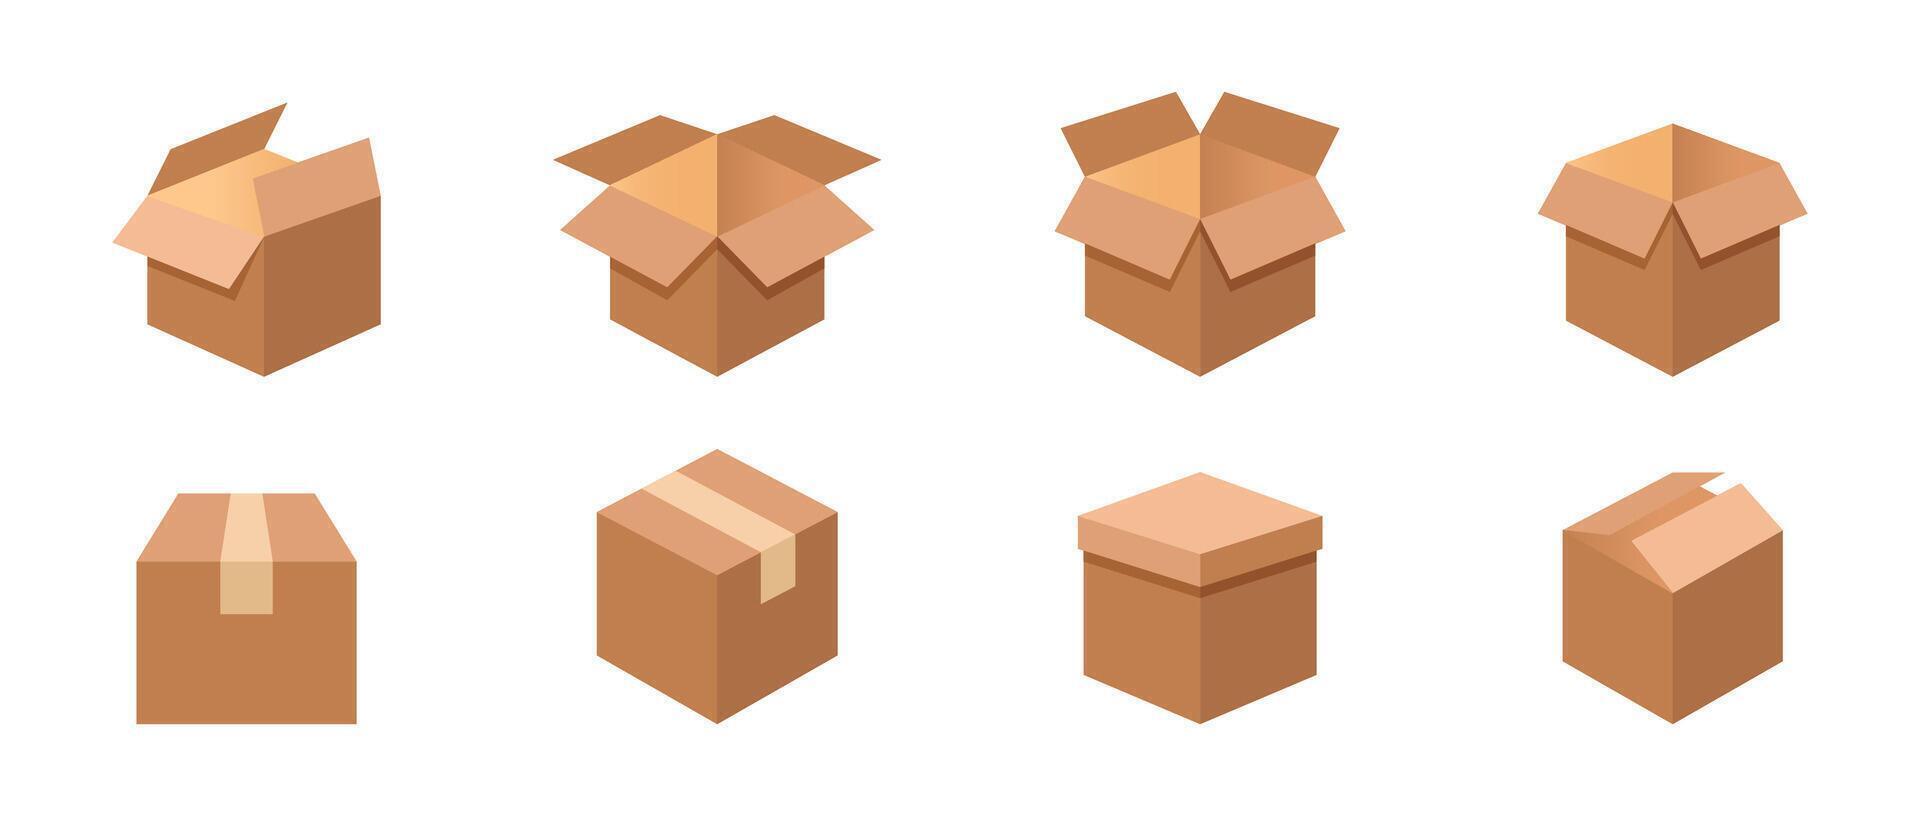 karton doos set. levering pakket dozen illustratie verzameling. vector